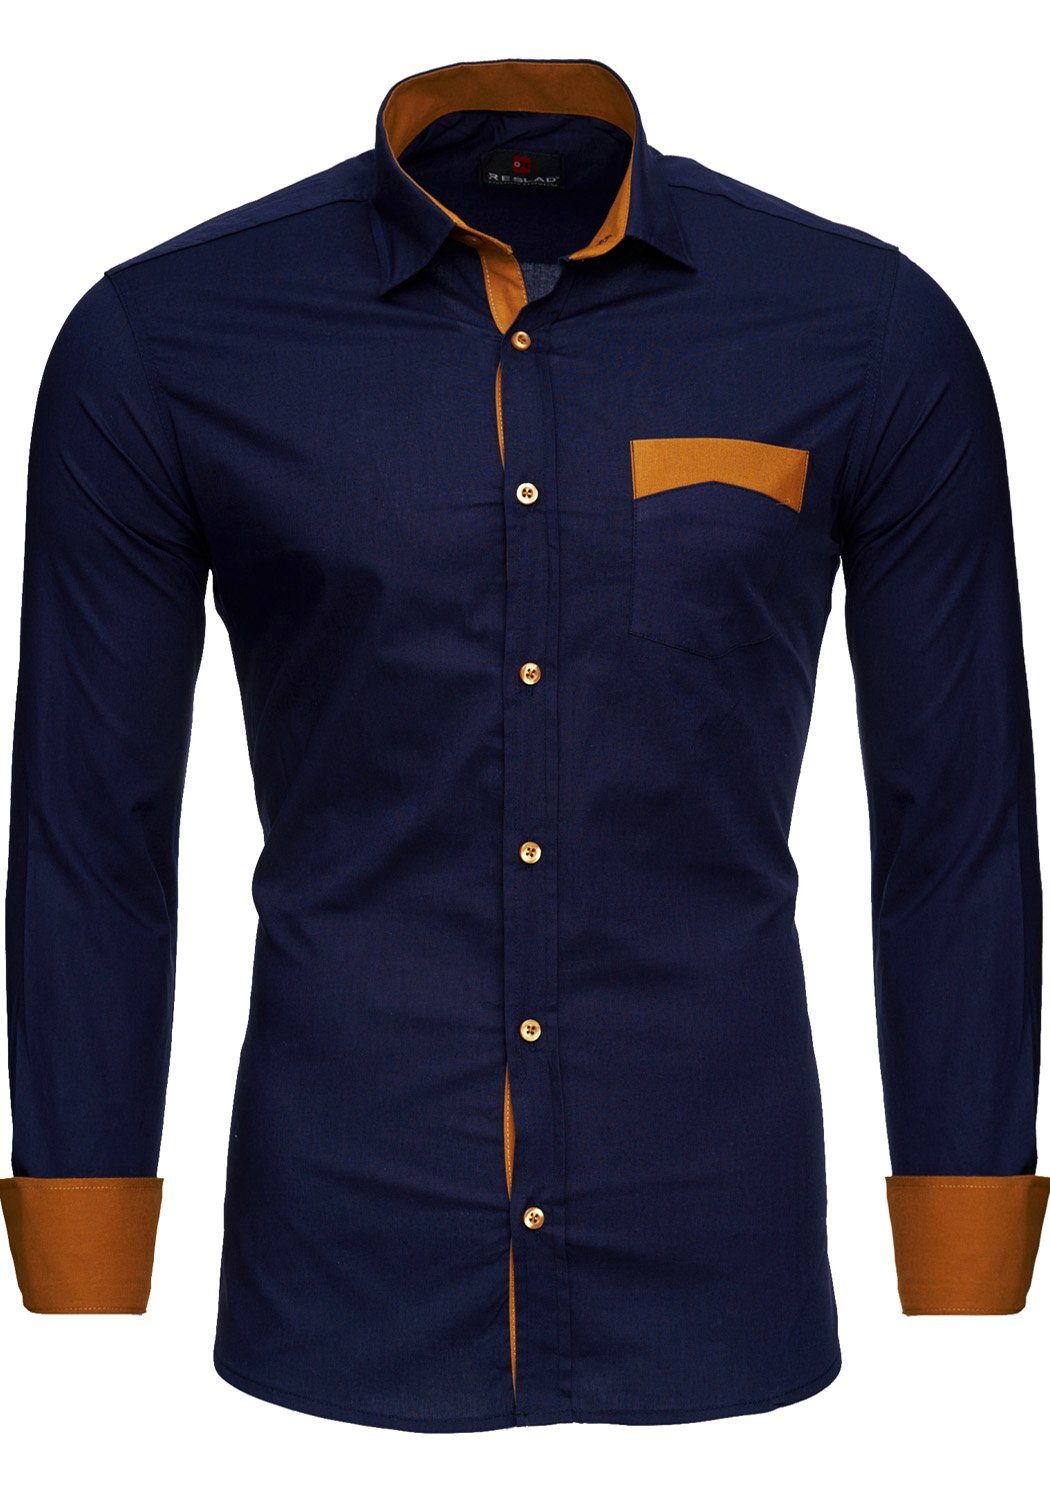 Günstige Hemden für Herren online kaufen » Hemden SALE | OTTO